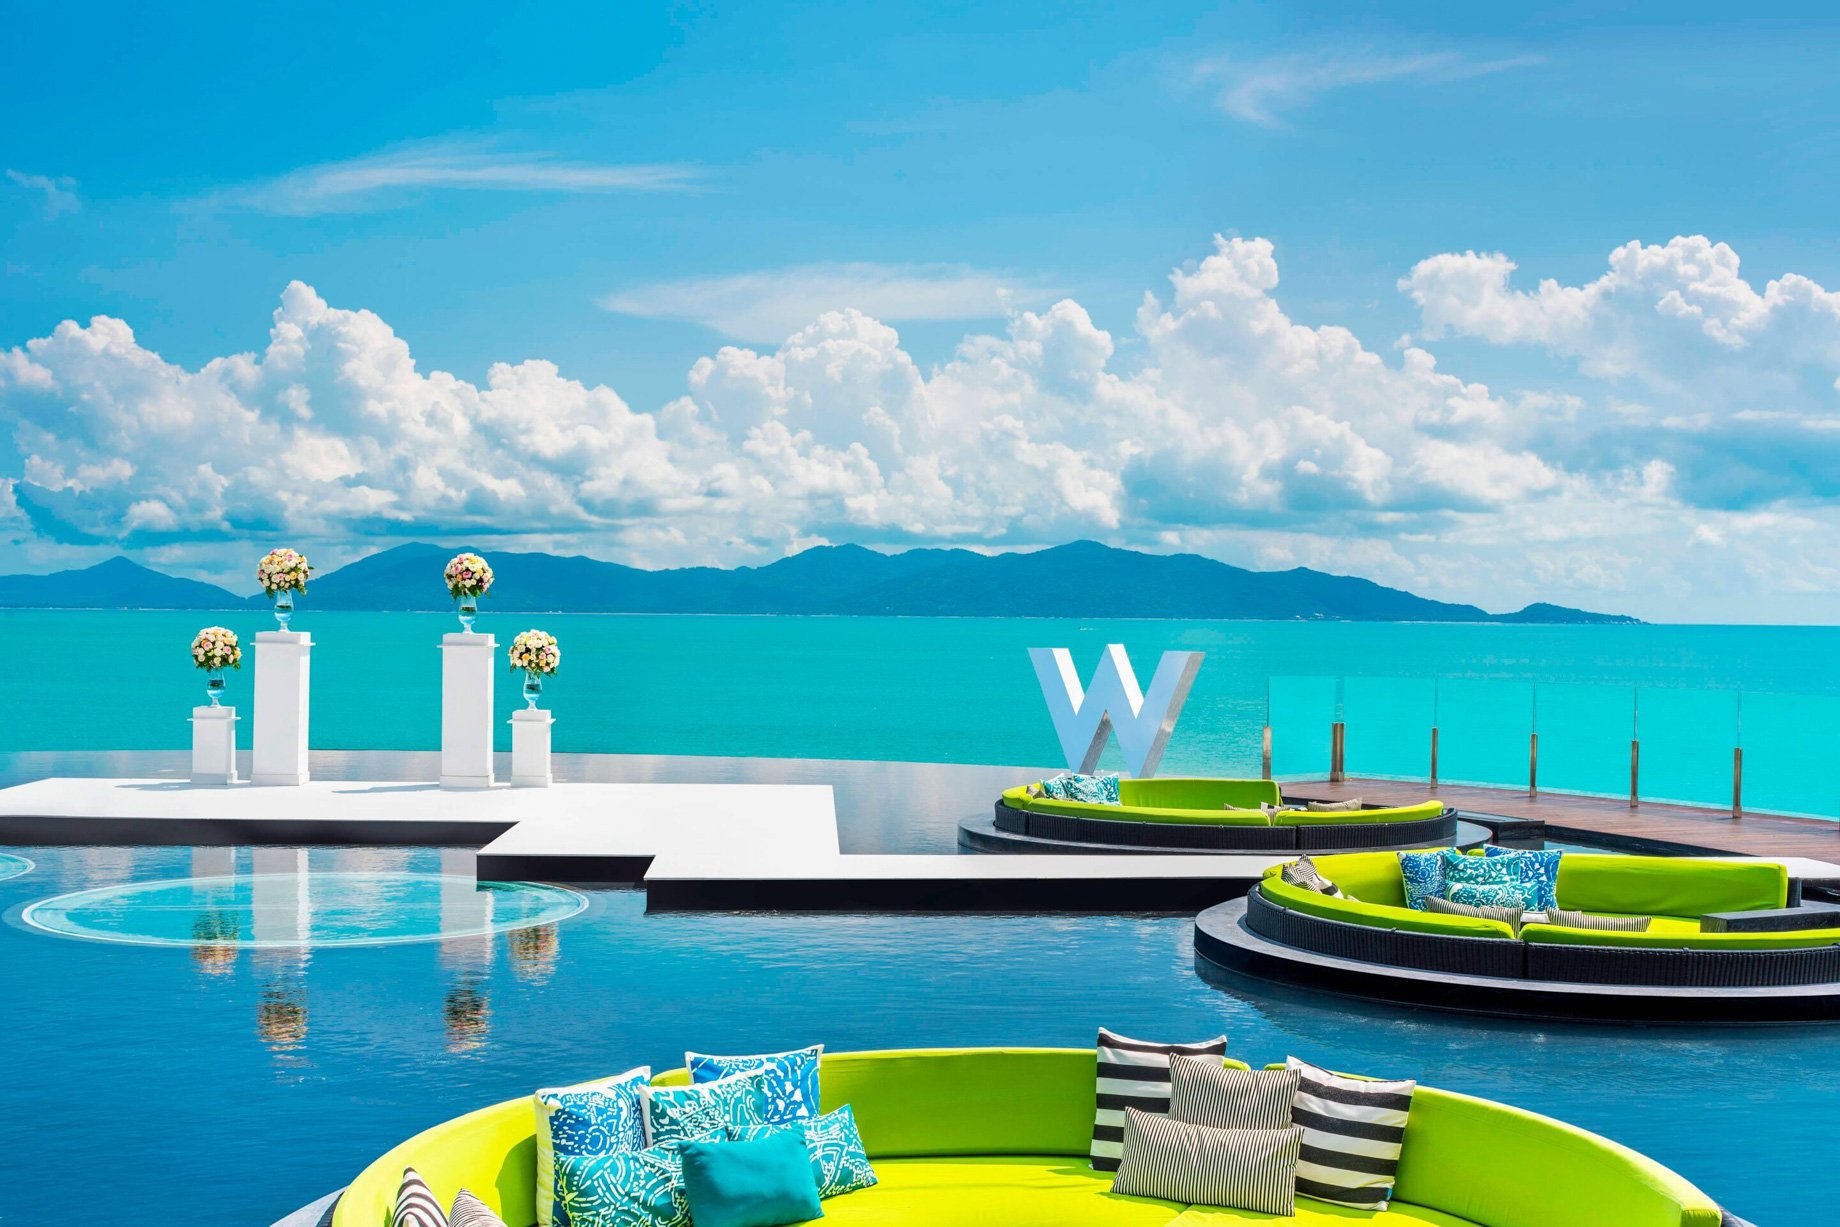 W Koh Samui Resort – Thailand – Pool Deck Wedding at WOOBAR